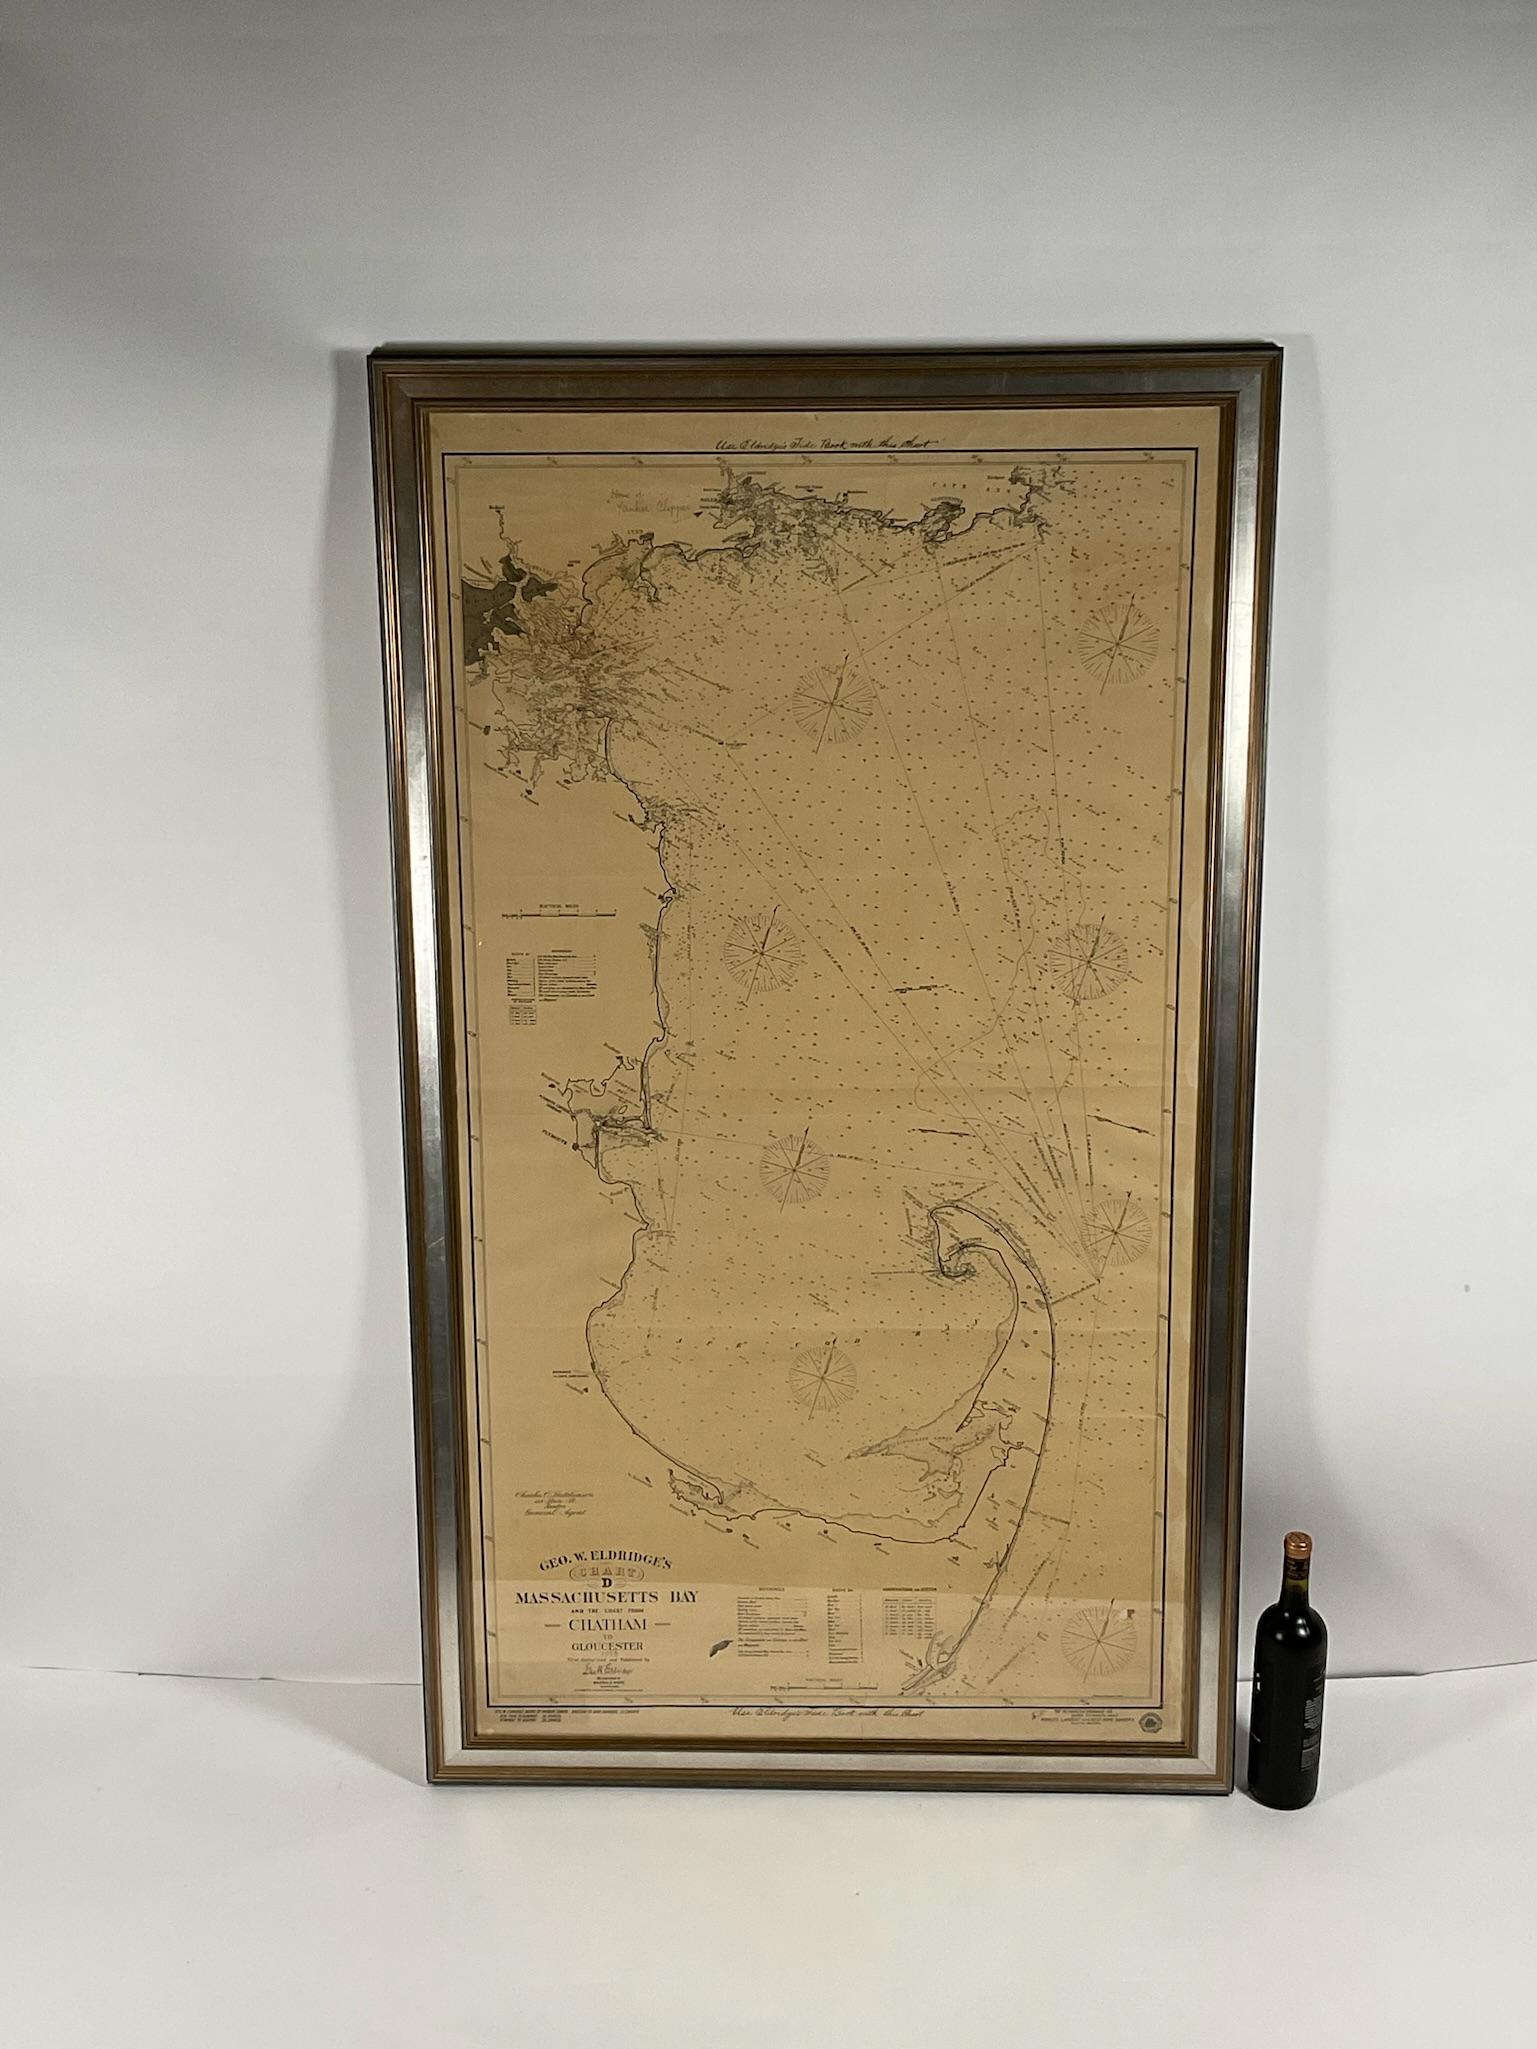 Seltene Karte der Bucht von Cape Cod aus dem frühen zwanzigsten Jahrhundert von George Eldridge, die die Bucht von Massachusetts und die Küste von Chatham bis Gloucester 1918 zeigt. Unterzeichnet George Eldridge.

Diese großartige Karte zeigt